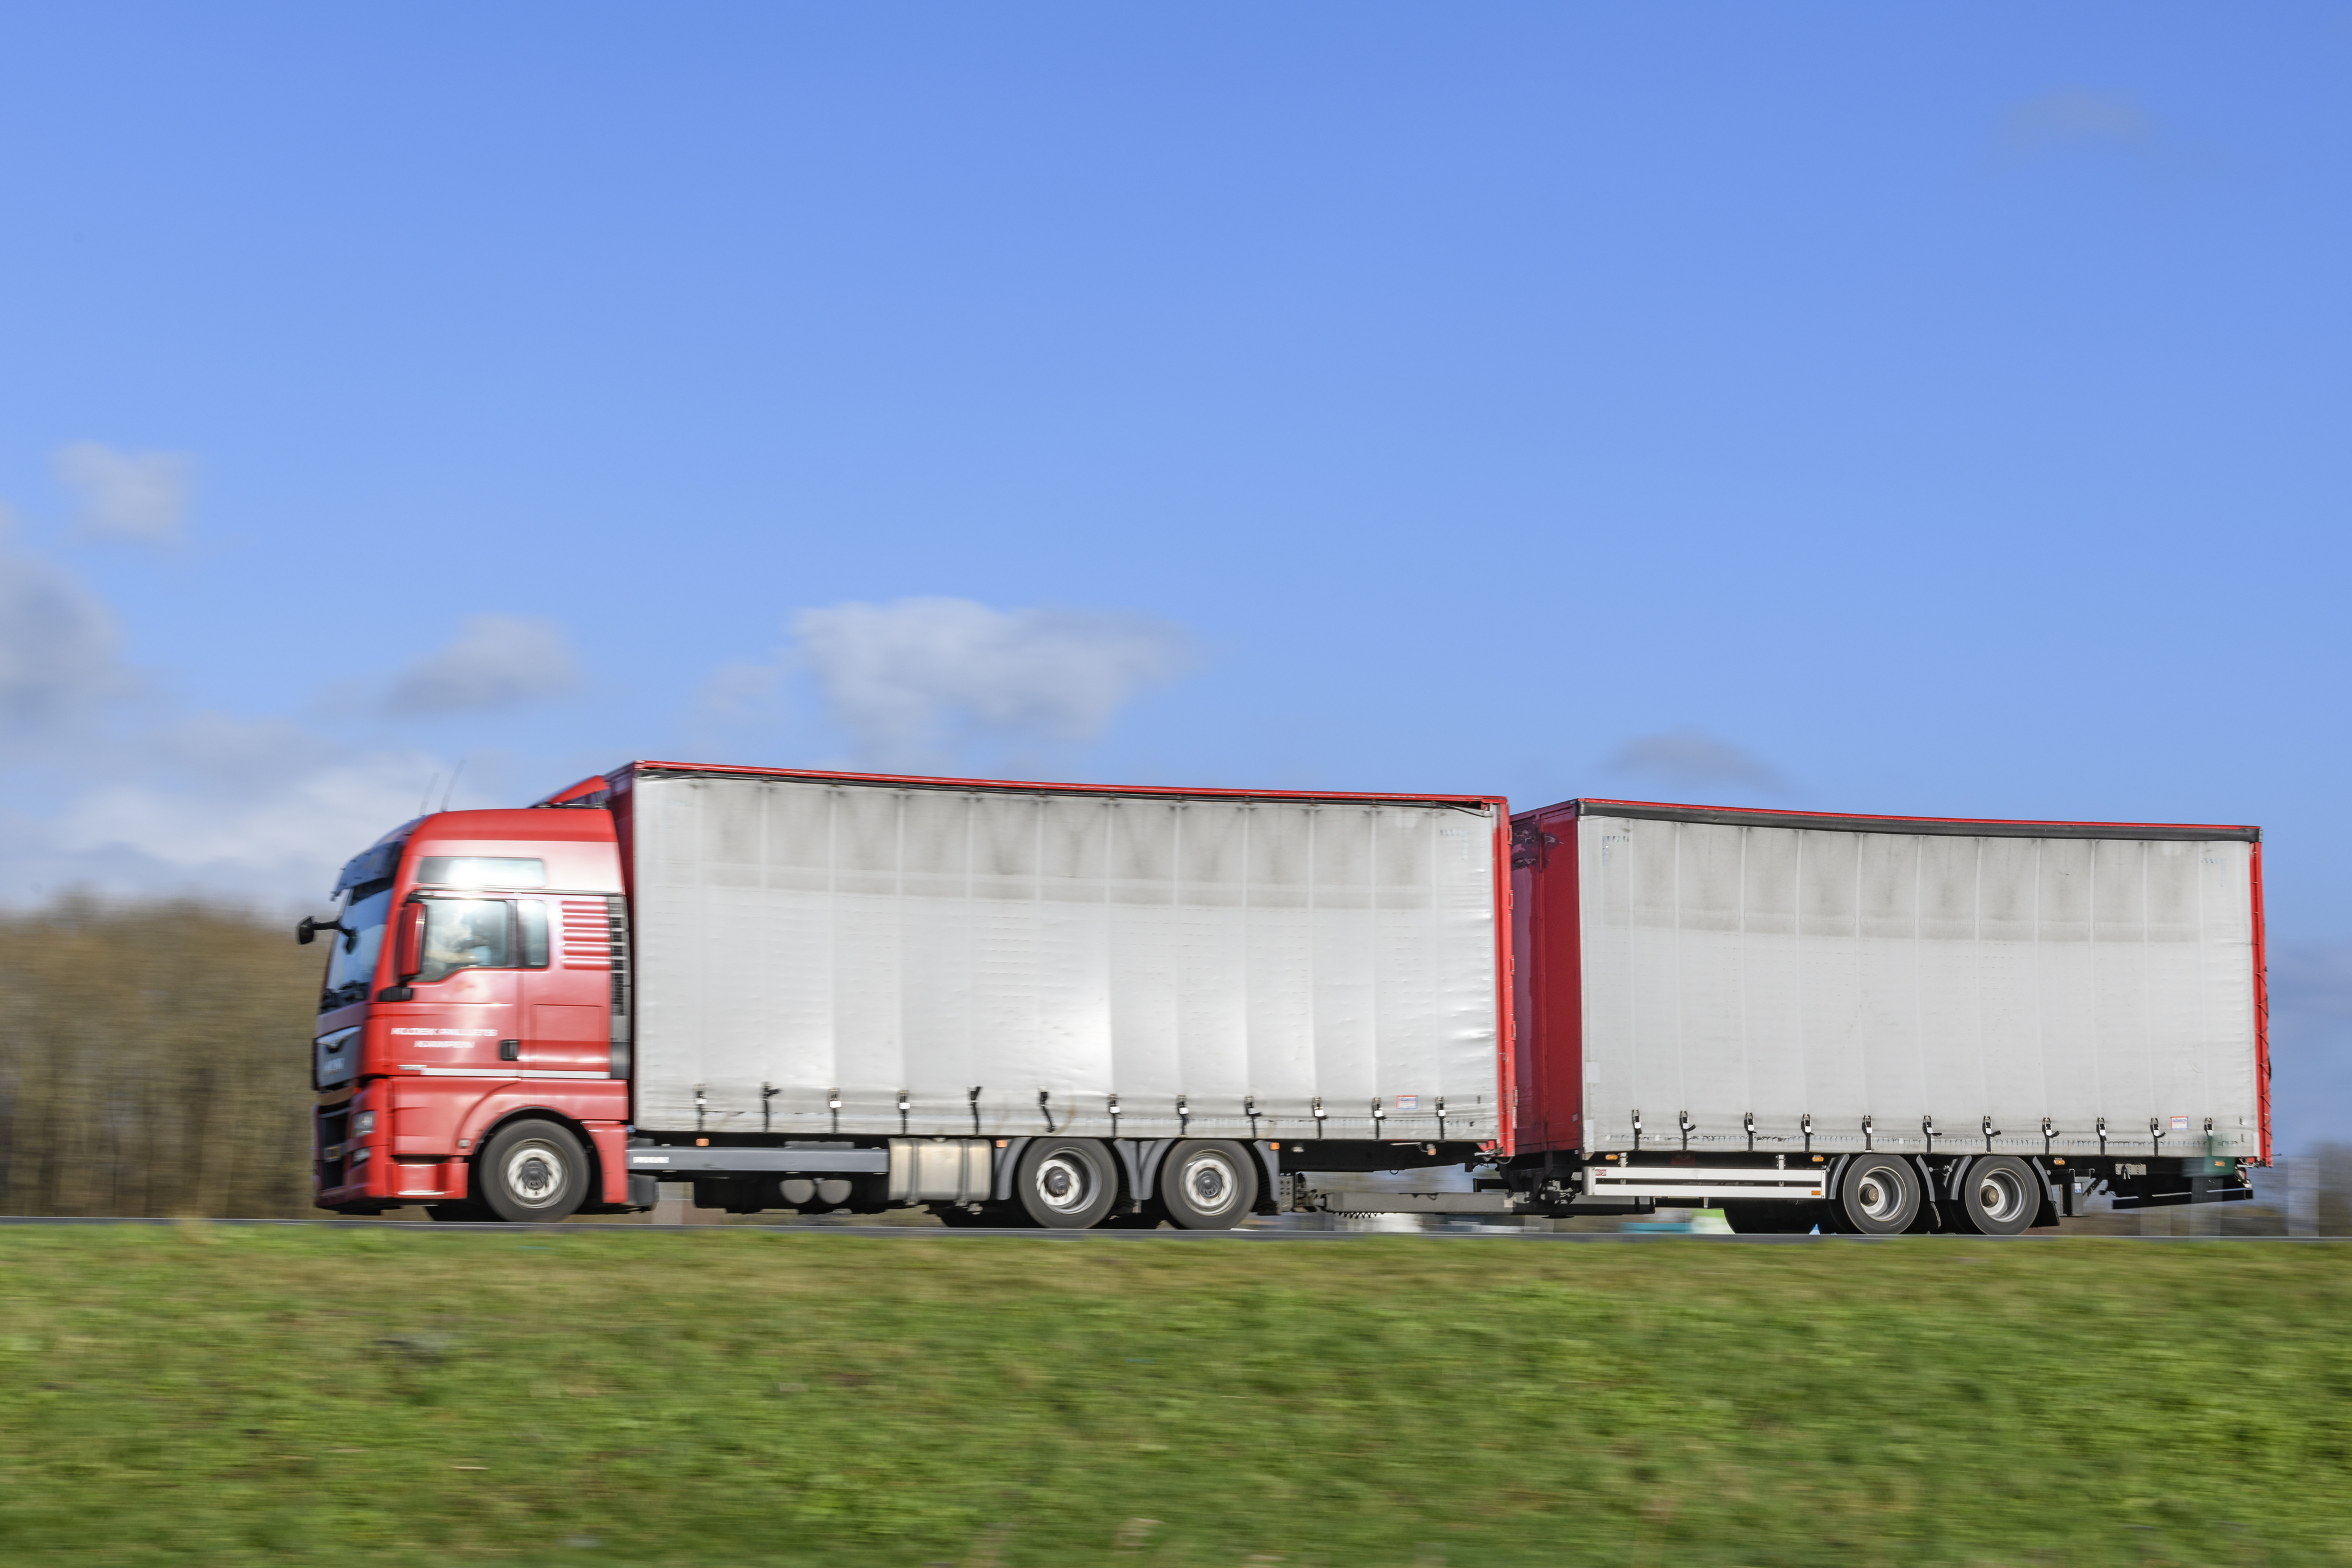 Cao Transport En Logistiek 2021 Cao Beroepsgoederenvervoer Wordt Verlengd Tot 1 Januari 2021 Transport En Logistiek Nederland